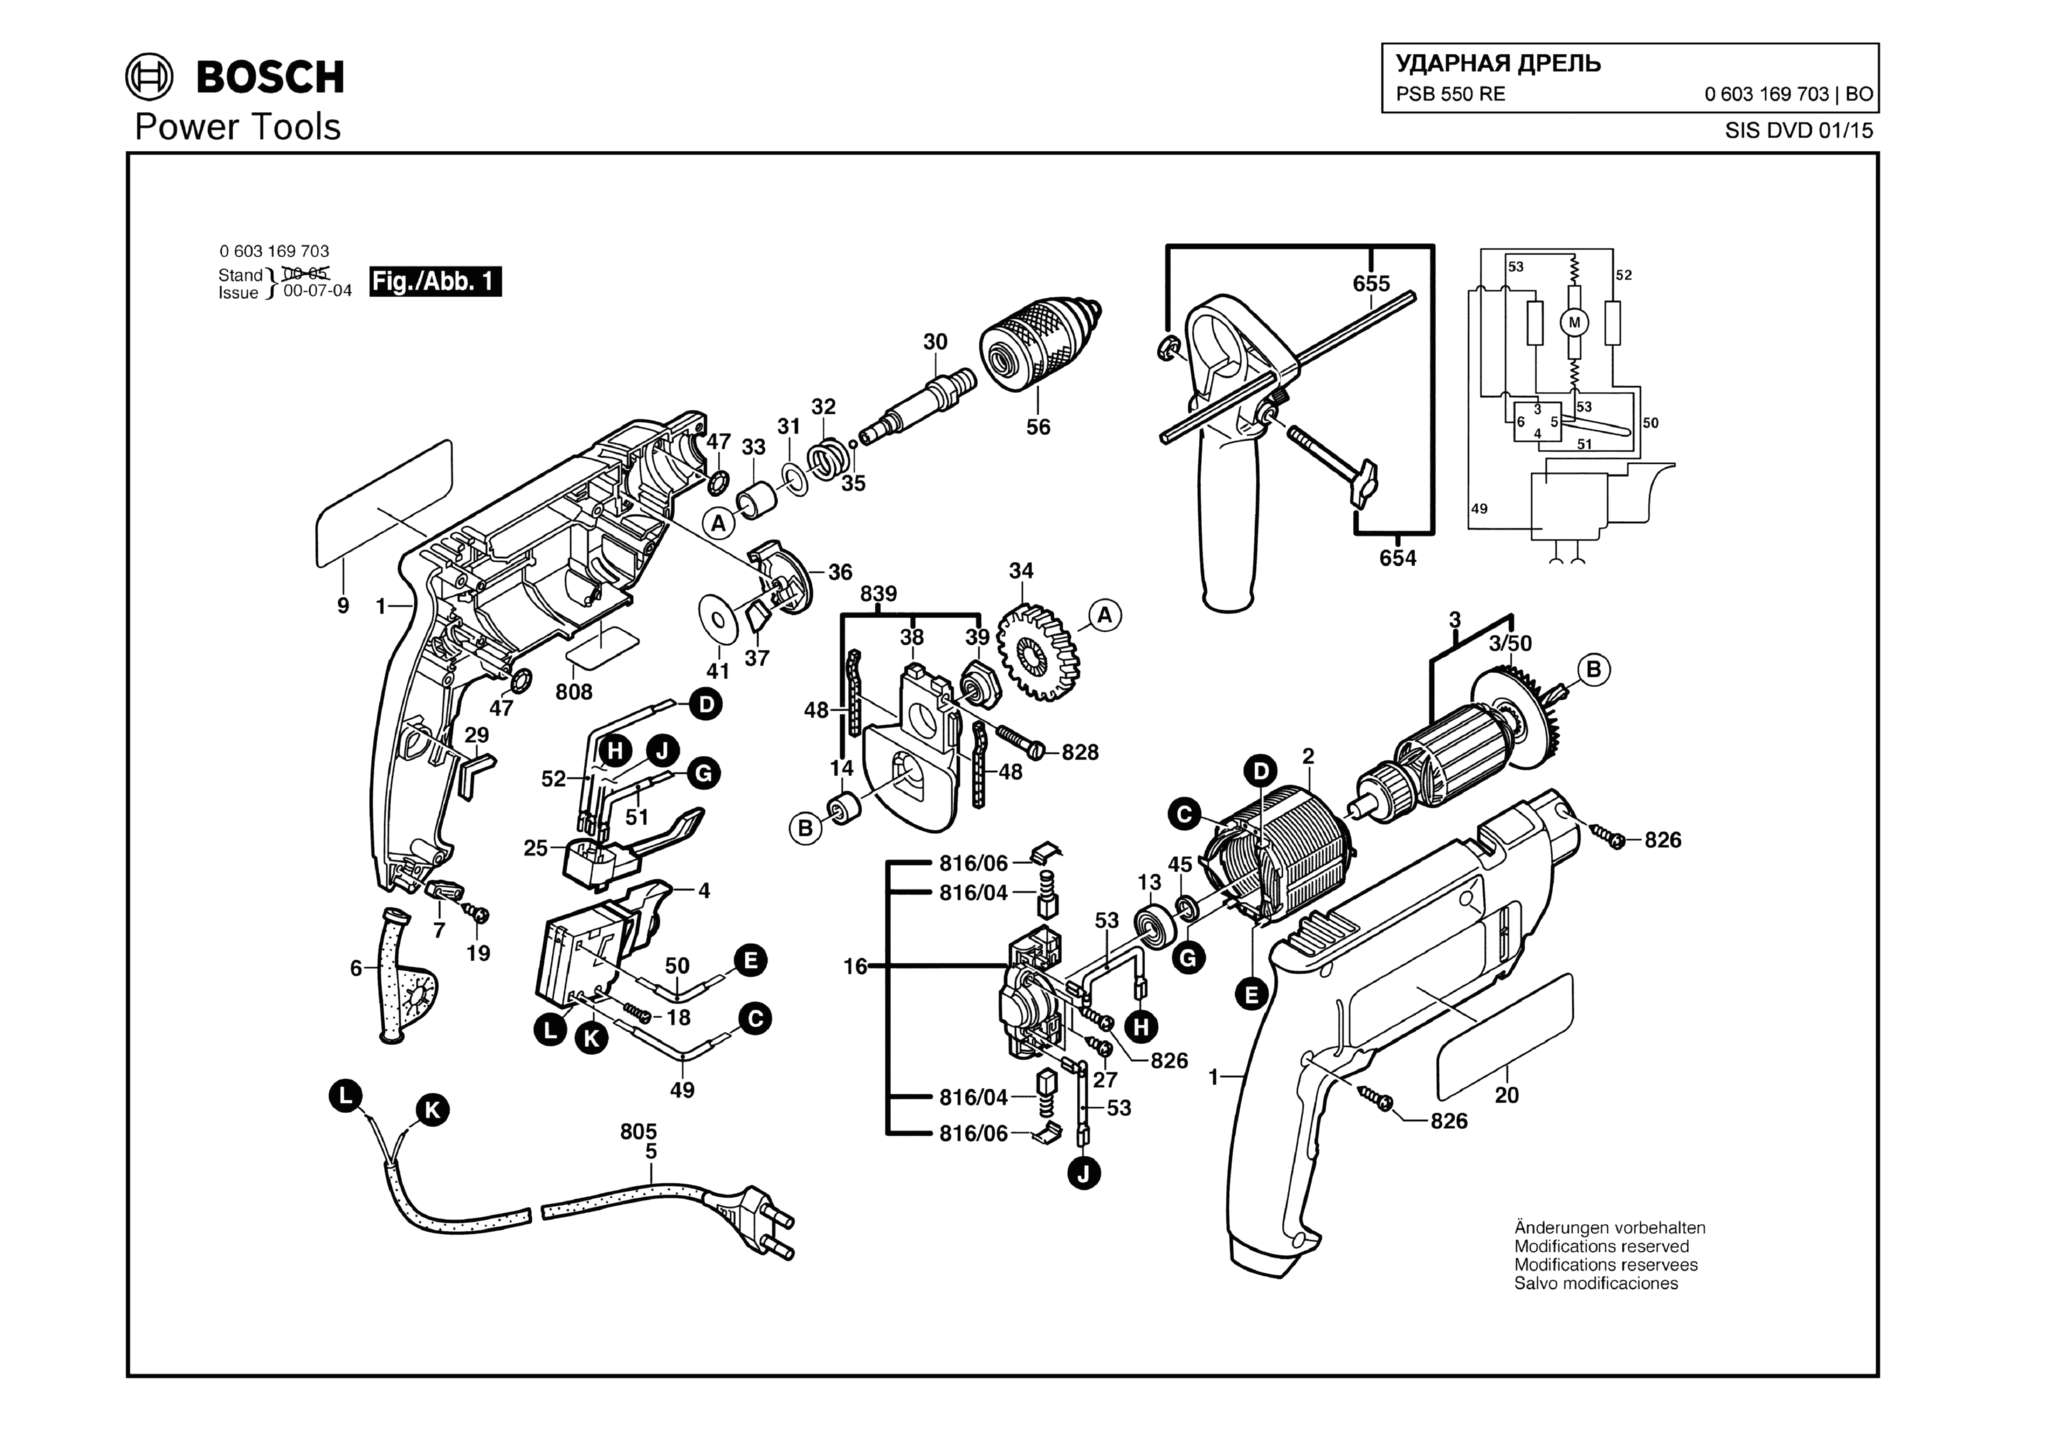 Запчасти, схема и деталировка Bosch PSB 550 RE (ТИП 0603169703)